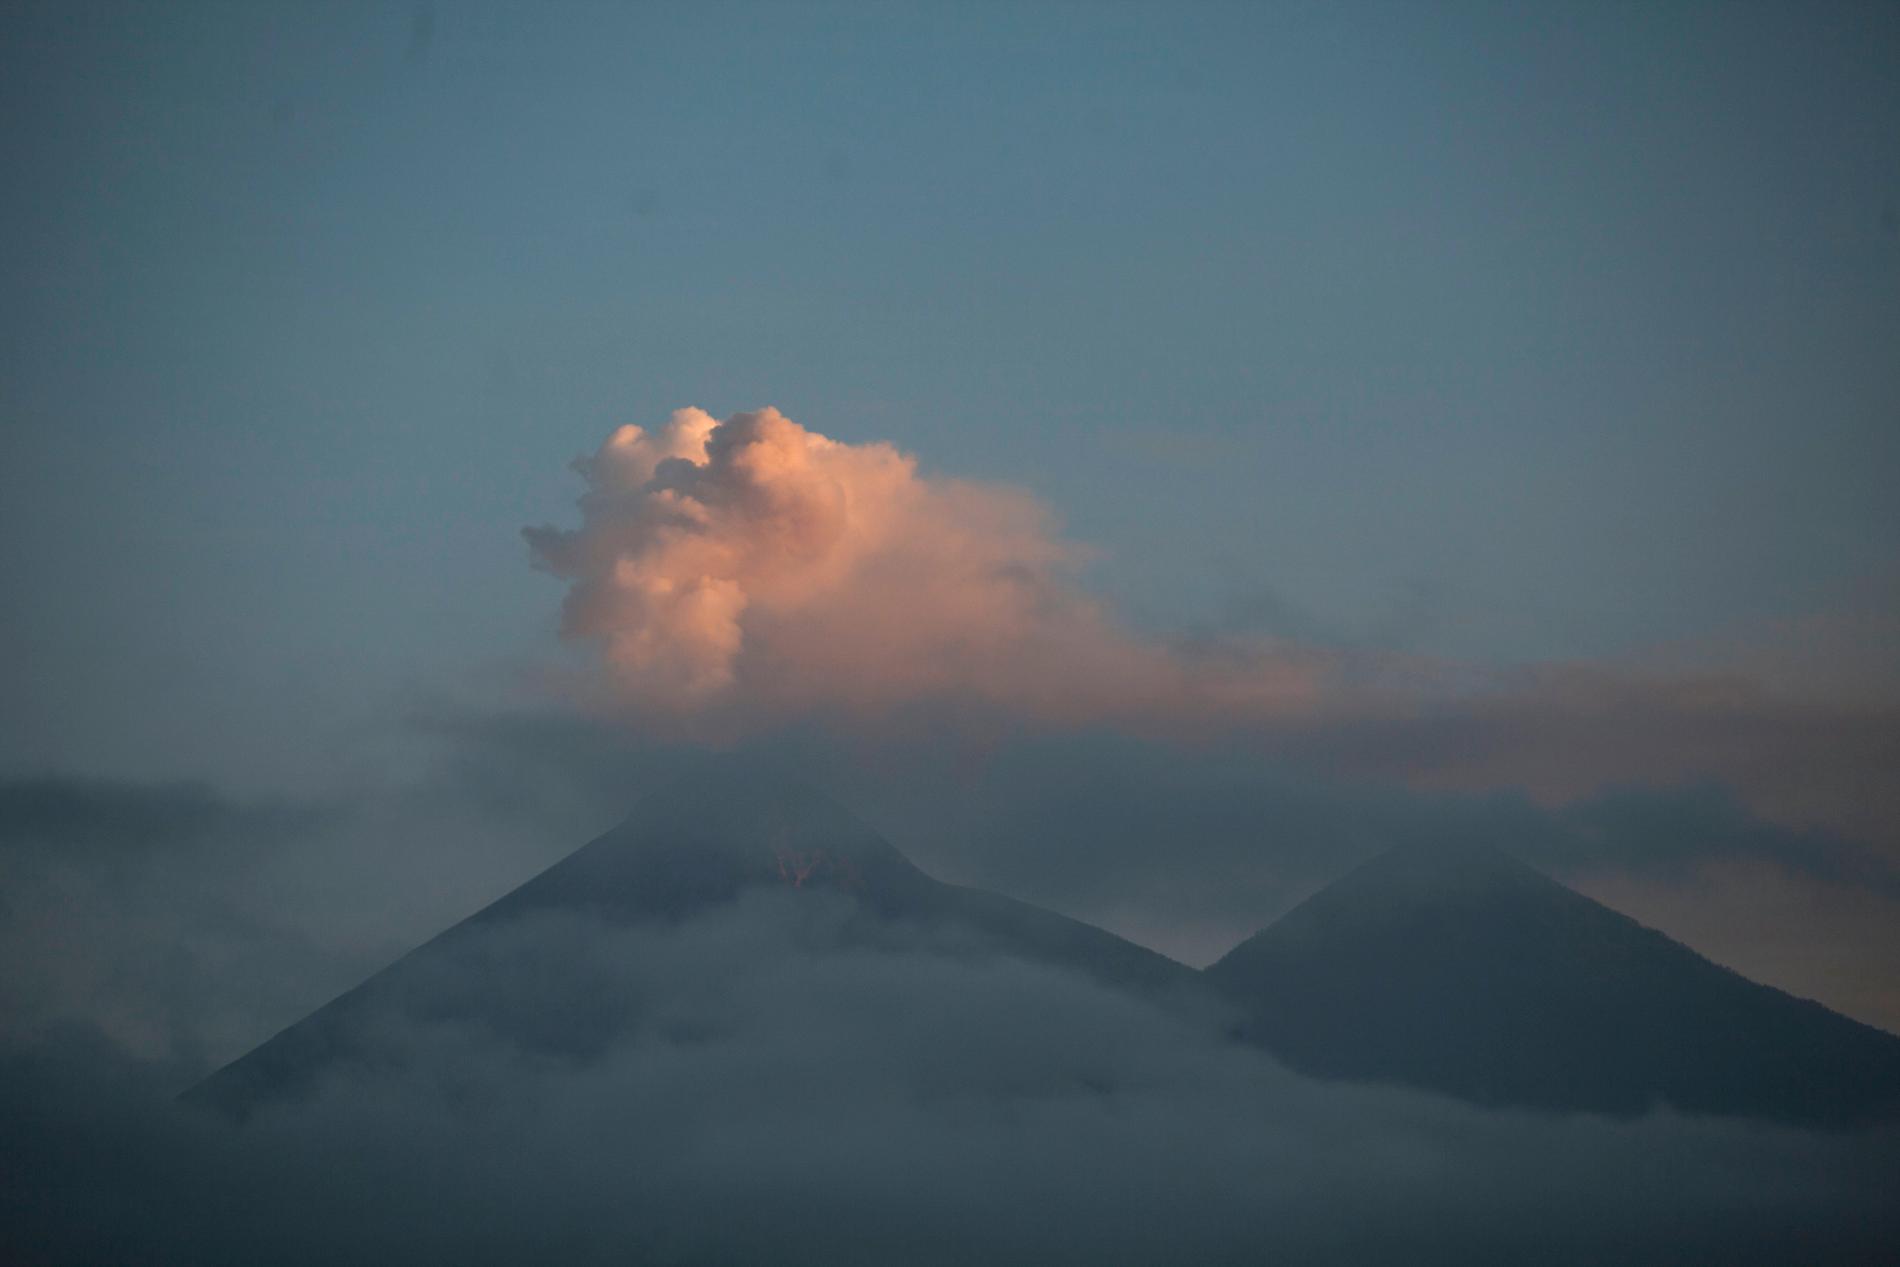 Ett askmoln ses stiga ur vulkanen Volcán de Fuego i södra Guatemala.